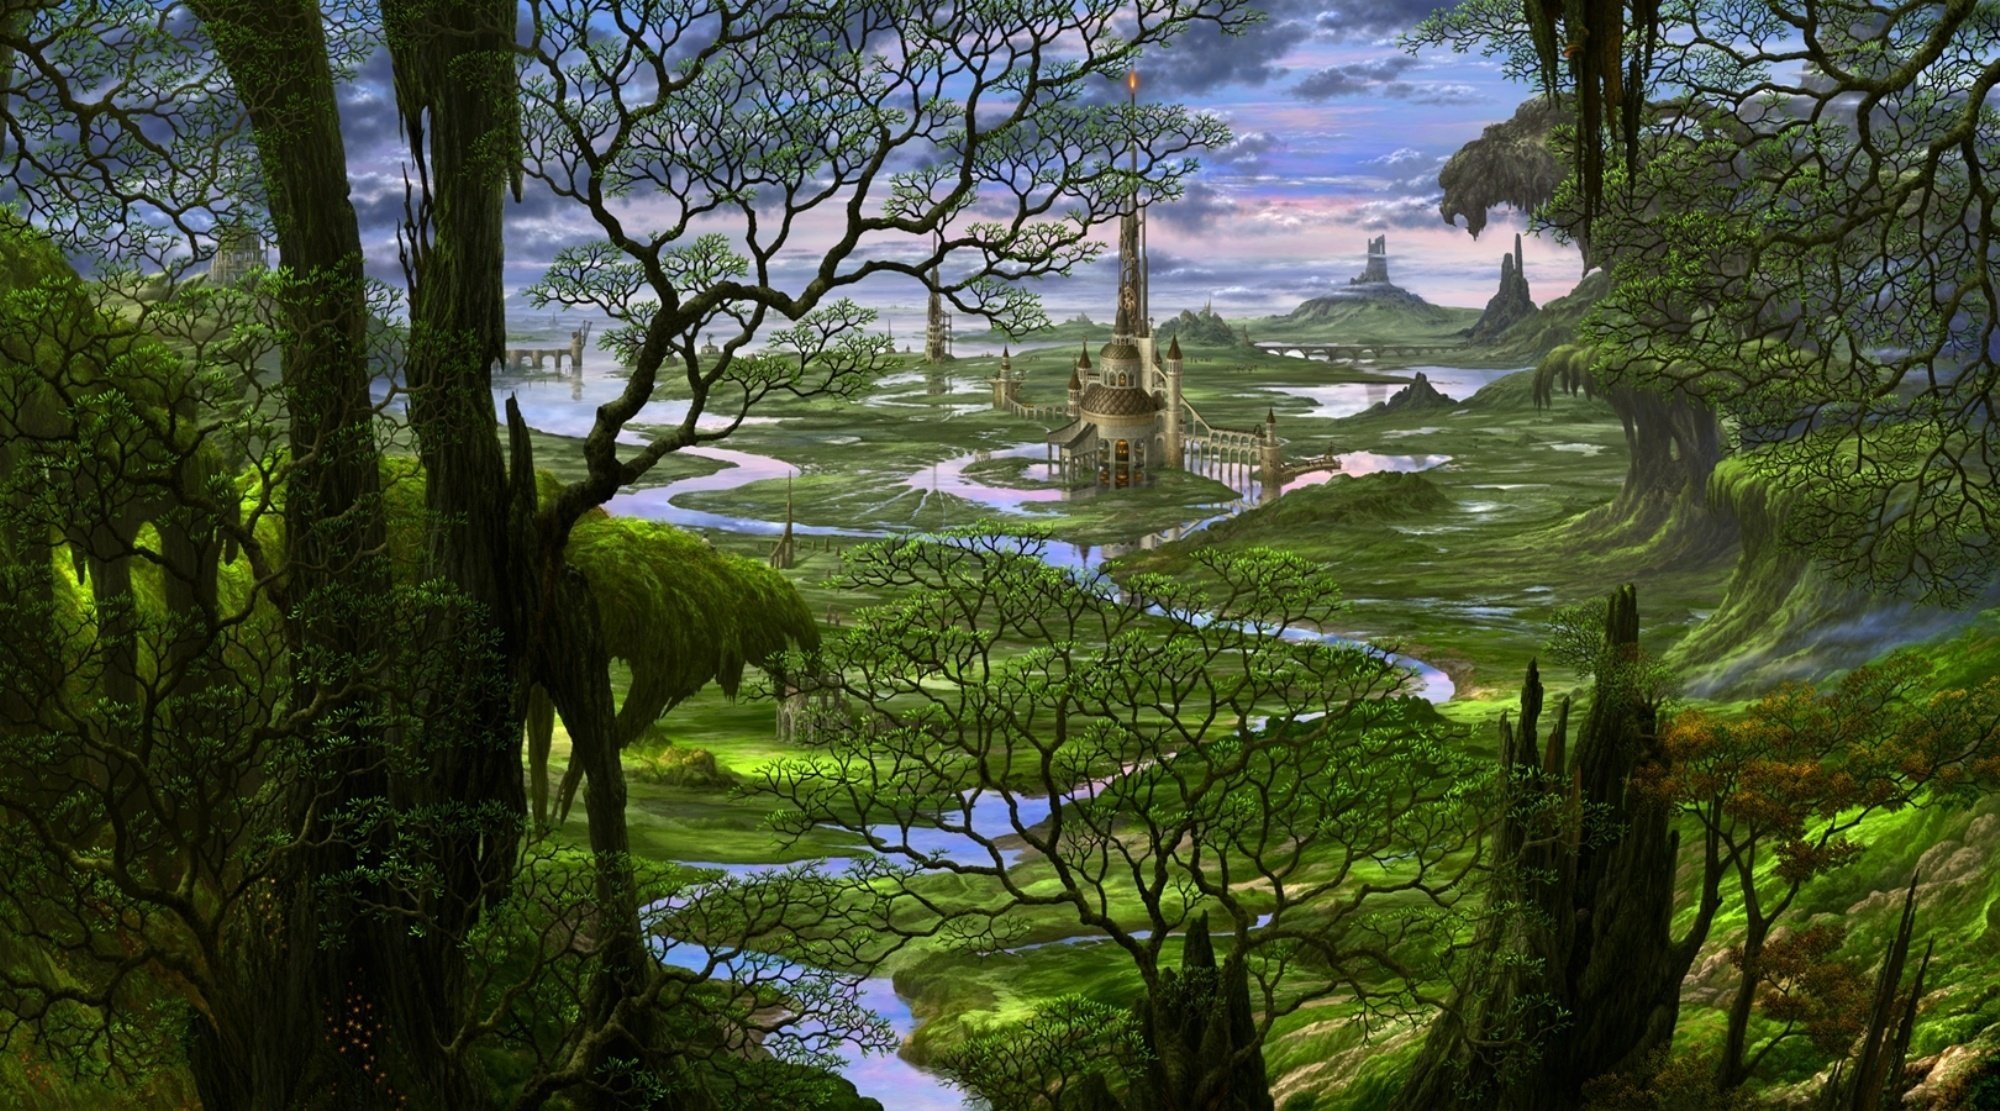 A lost castle among impassable swamps